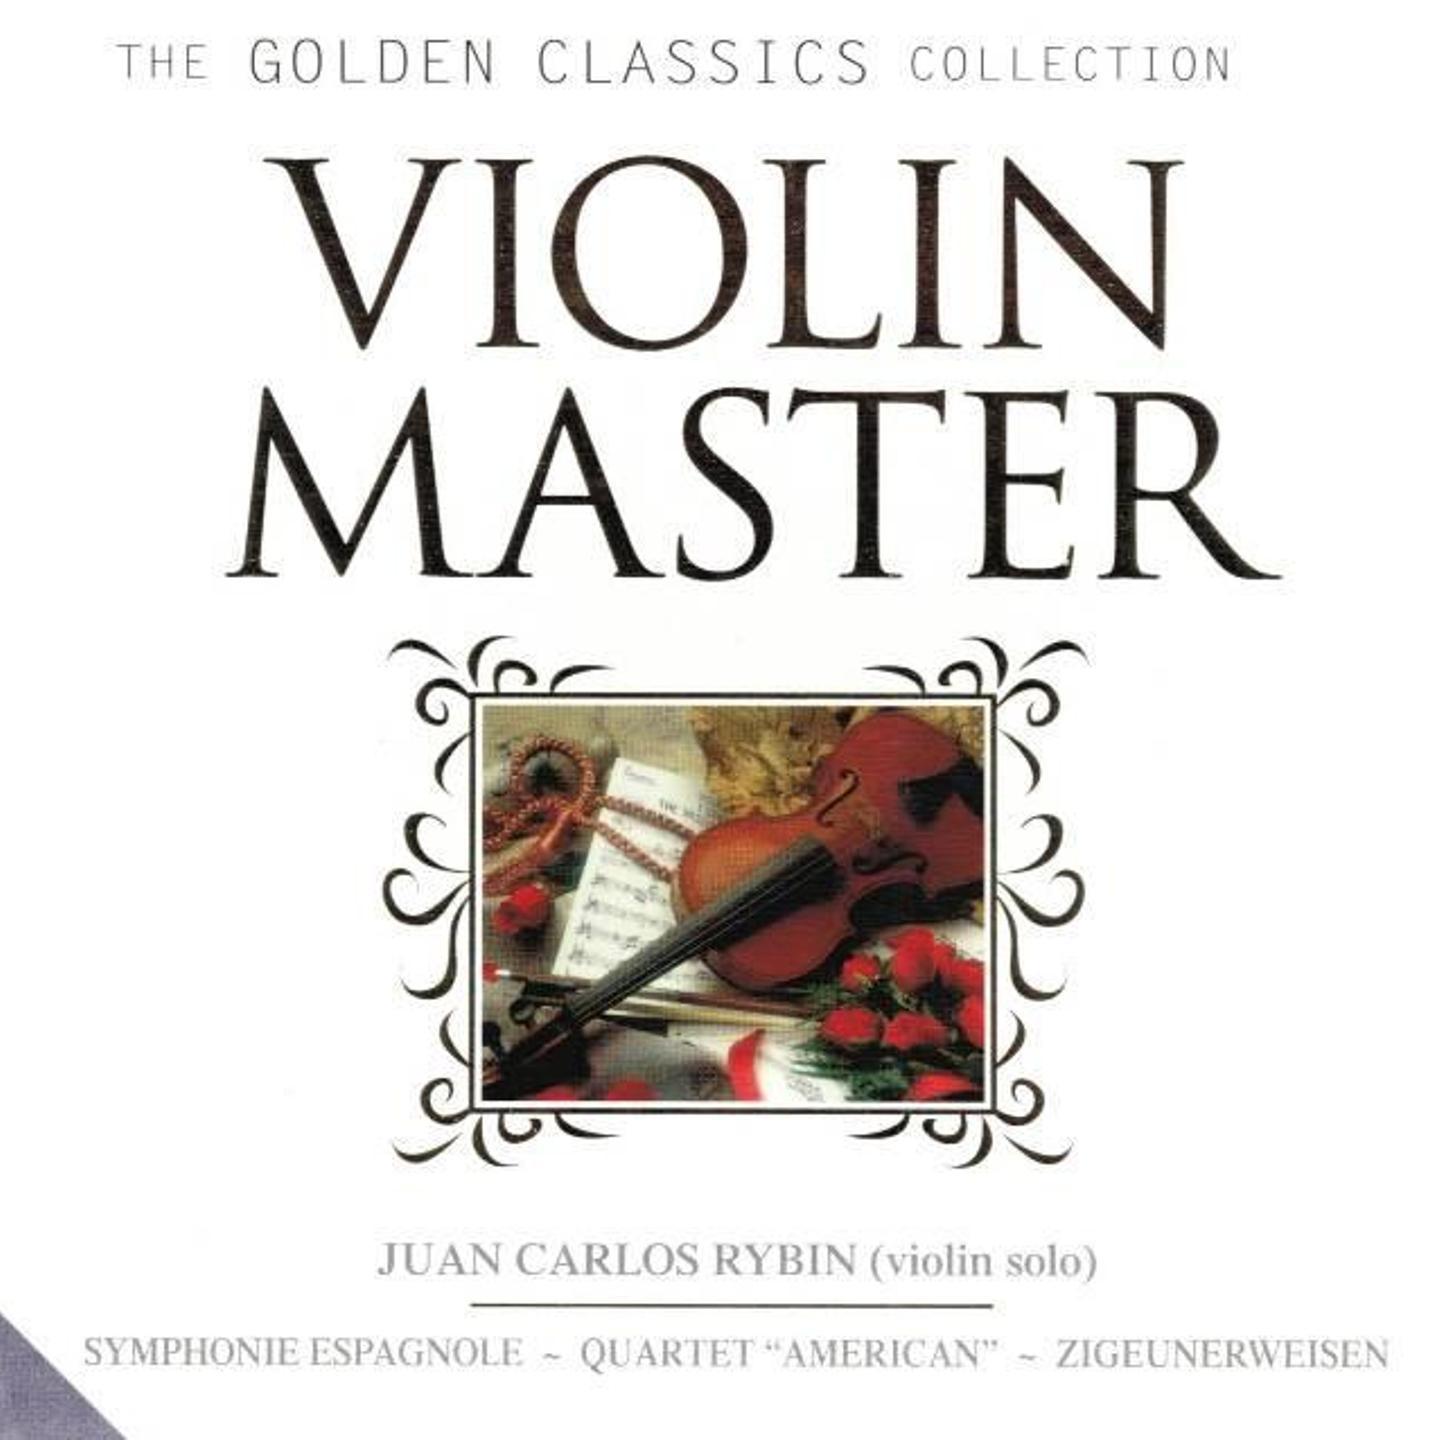 Violin Concerto in E Minor, Op. 64. Allegro molto appassionato